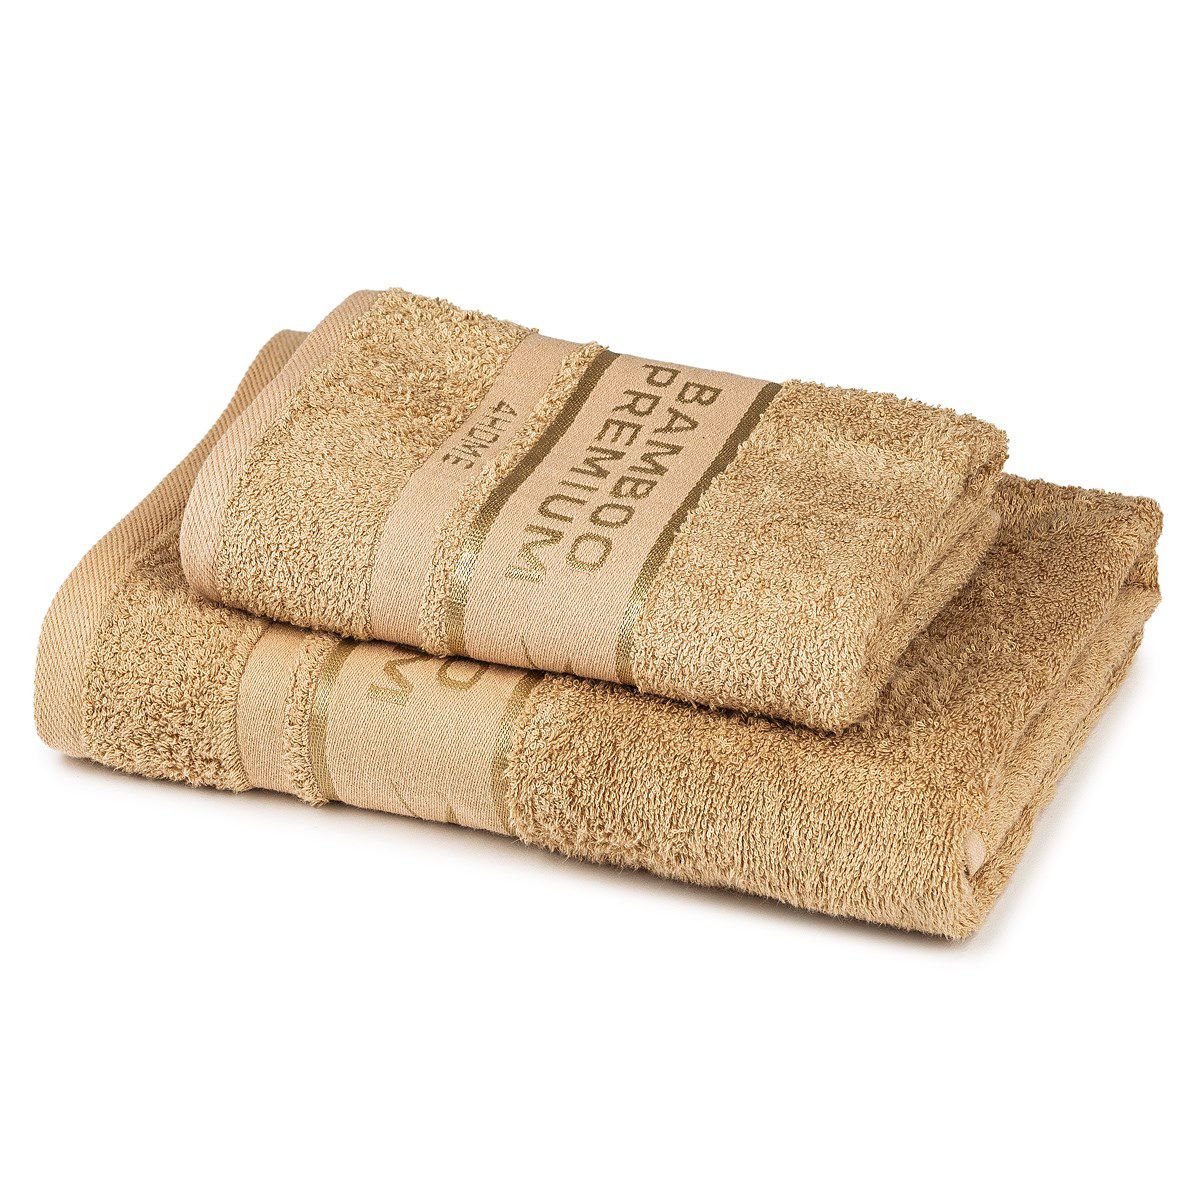 4Home Sada Bamboo Premium osuška a ručník béžová, 70 x 140 cm, 50 x 100 cm - 4home.cz